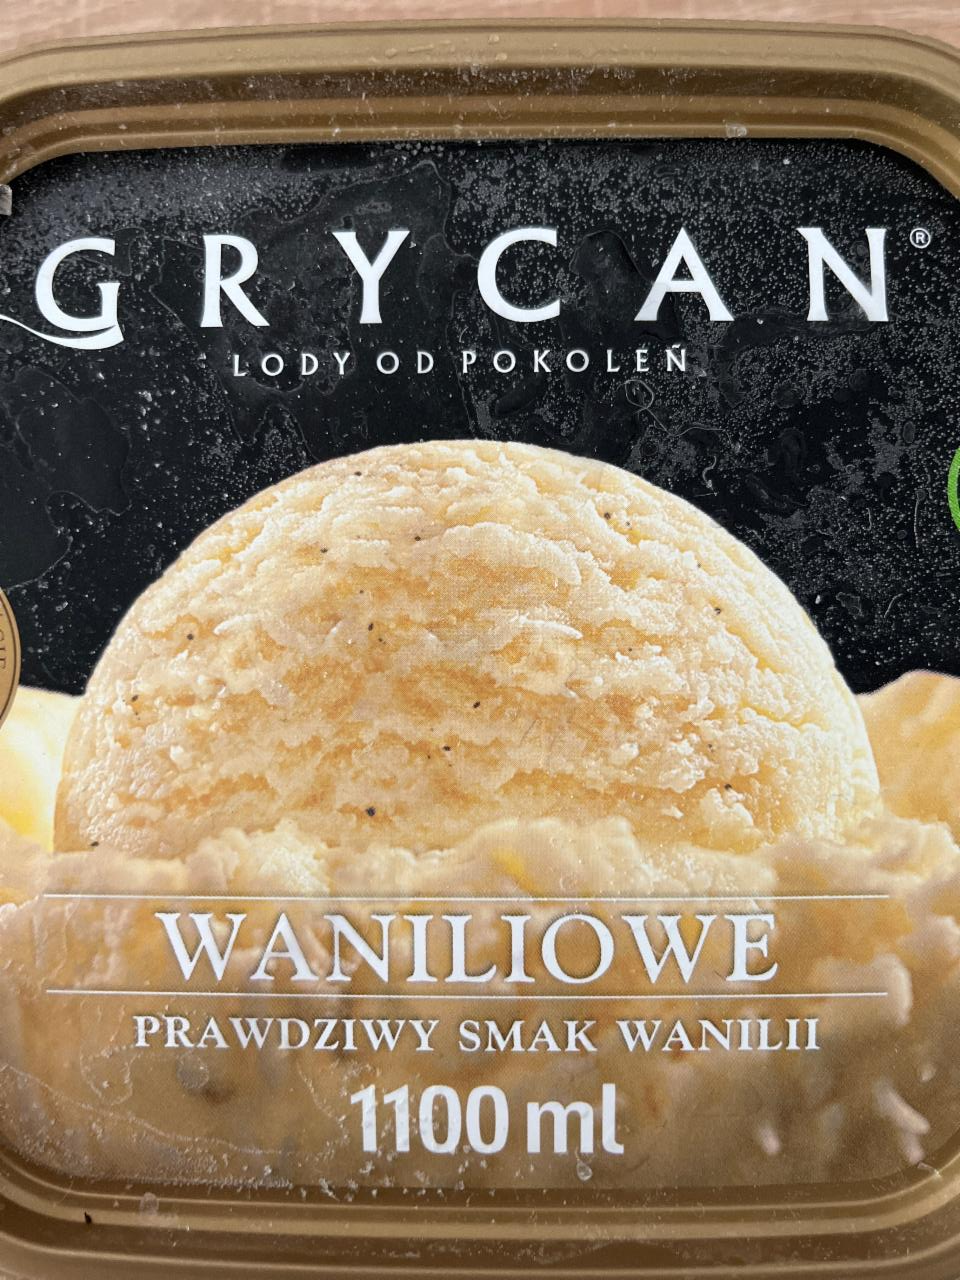 Фото - Мороженое ванильное Waniliowe Grycan